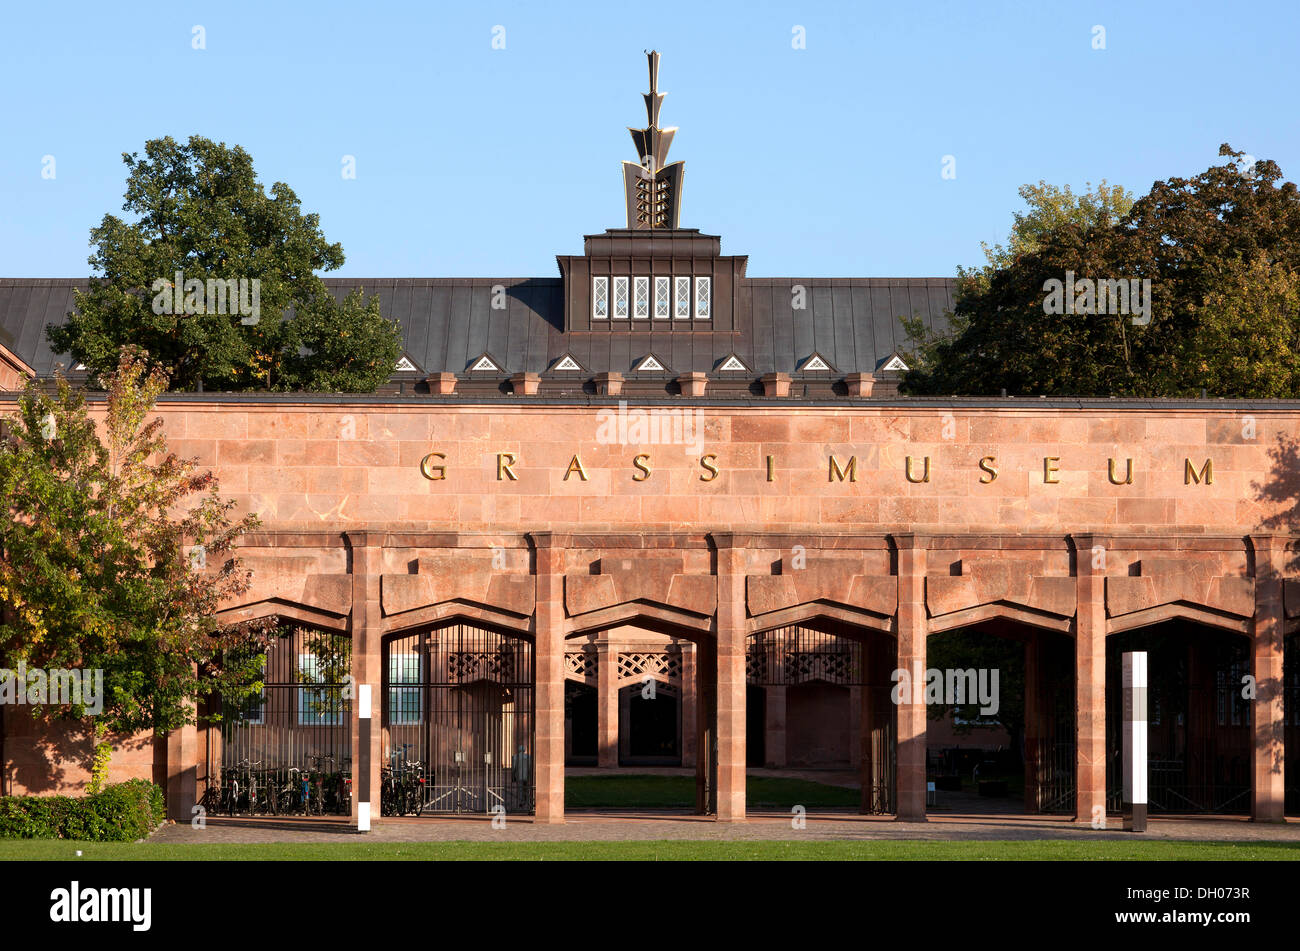 Grassi Museum, Leipzig, PublicGround Stock Photo